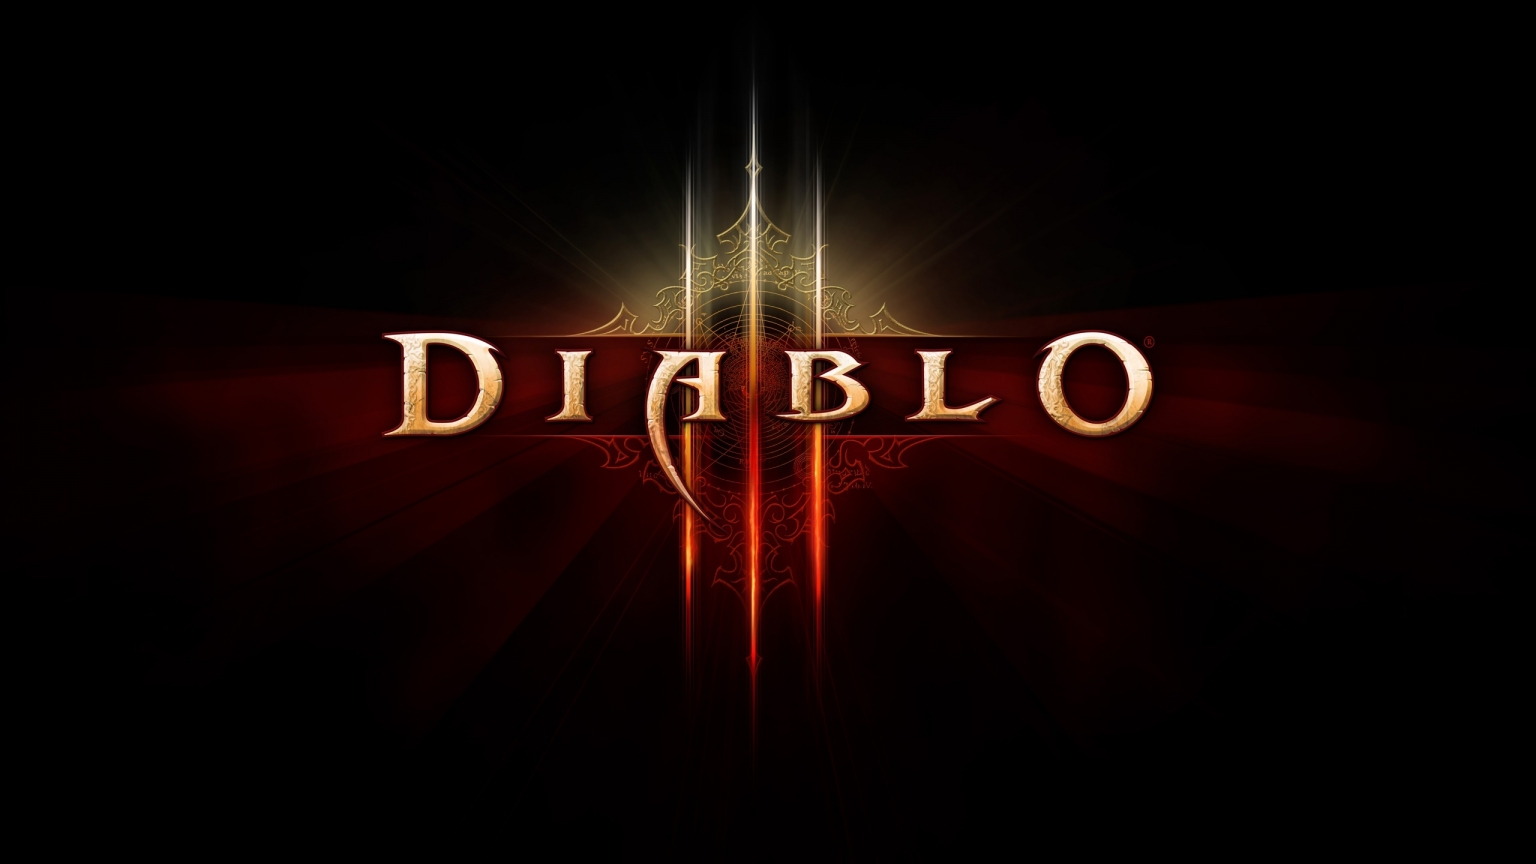 Diablo 3 Logo for 1536 x 864 HDTV resolution